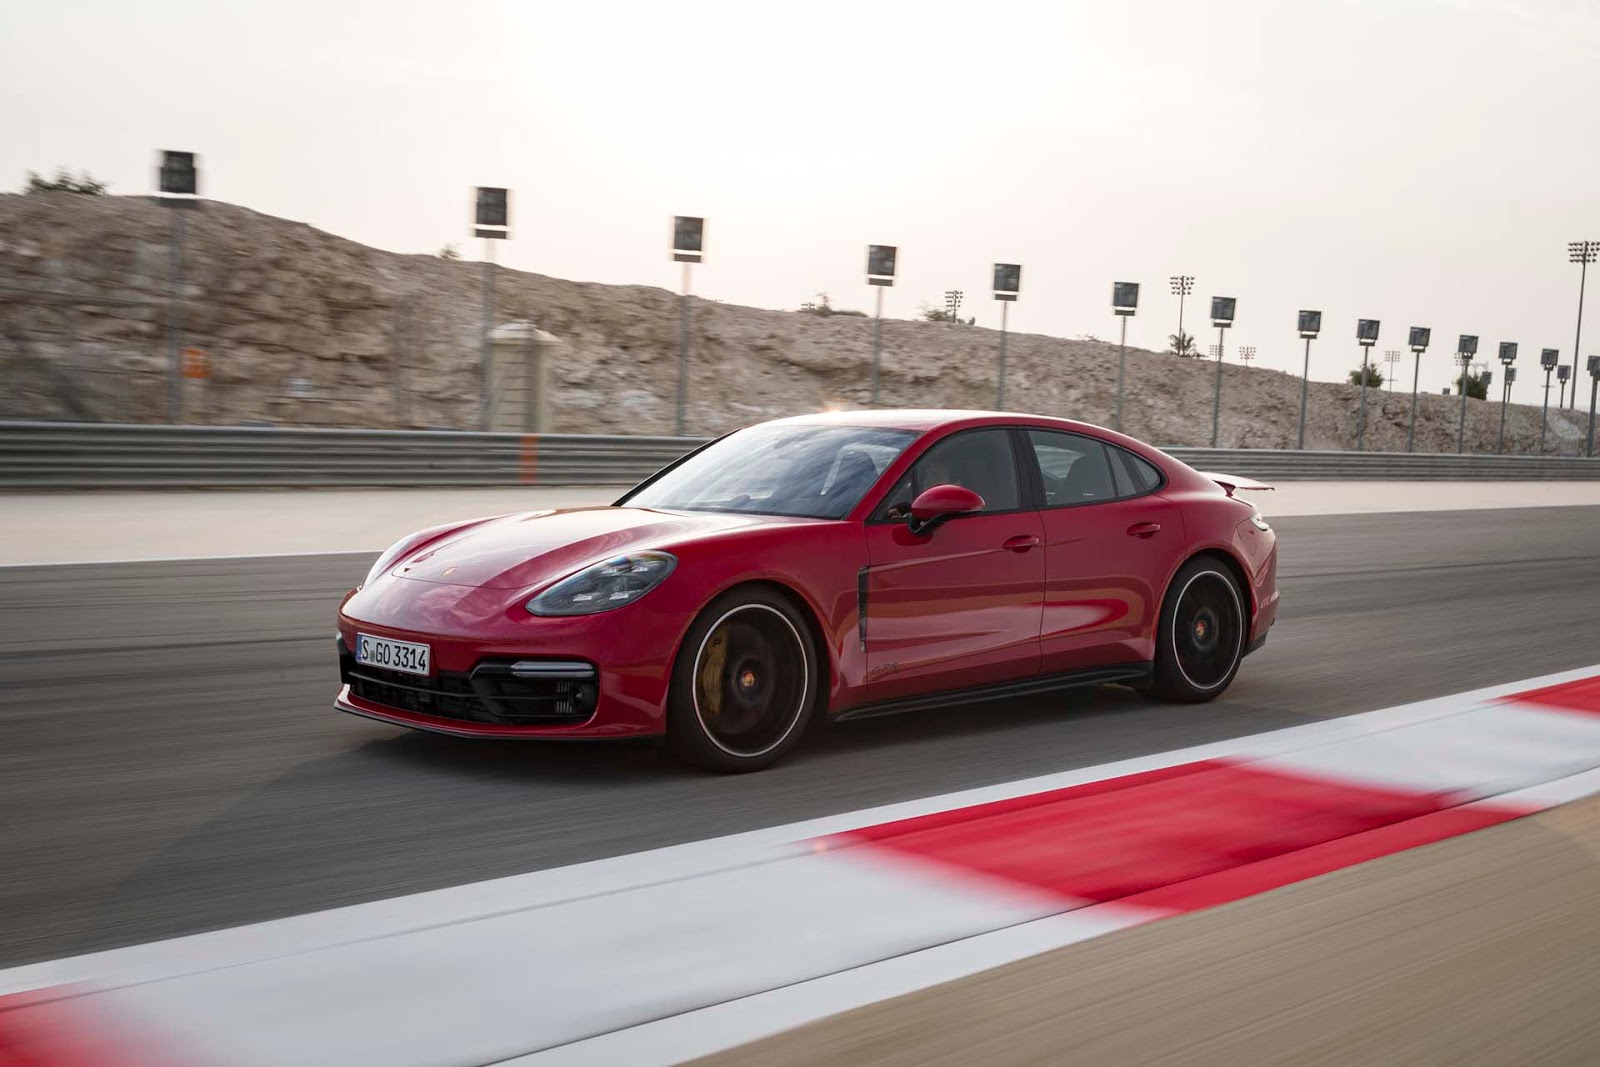 Xe Porsche Pannamera GTS Giá Bao Nhiêu Tiền Đời 2020 chiếc màu đỏ tươi rực rỡ